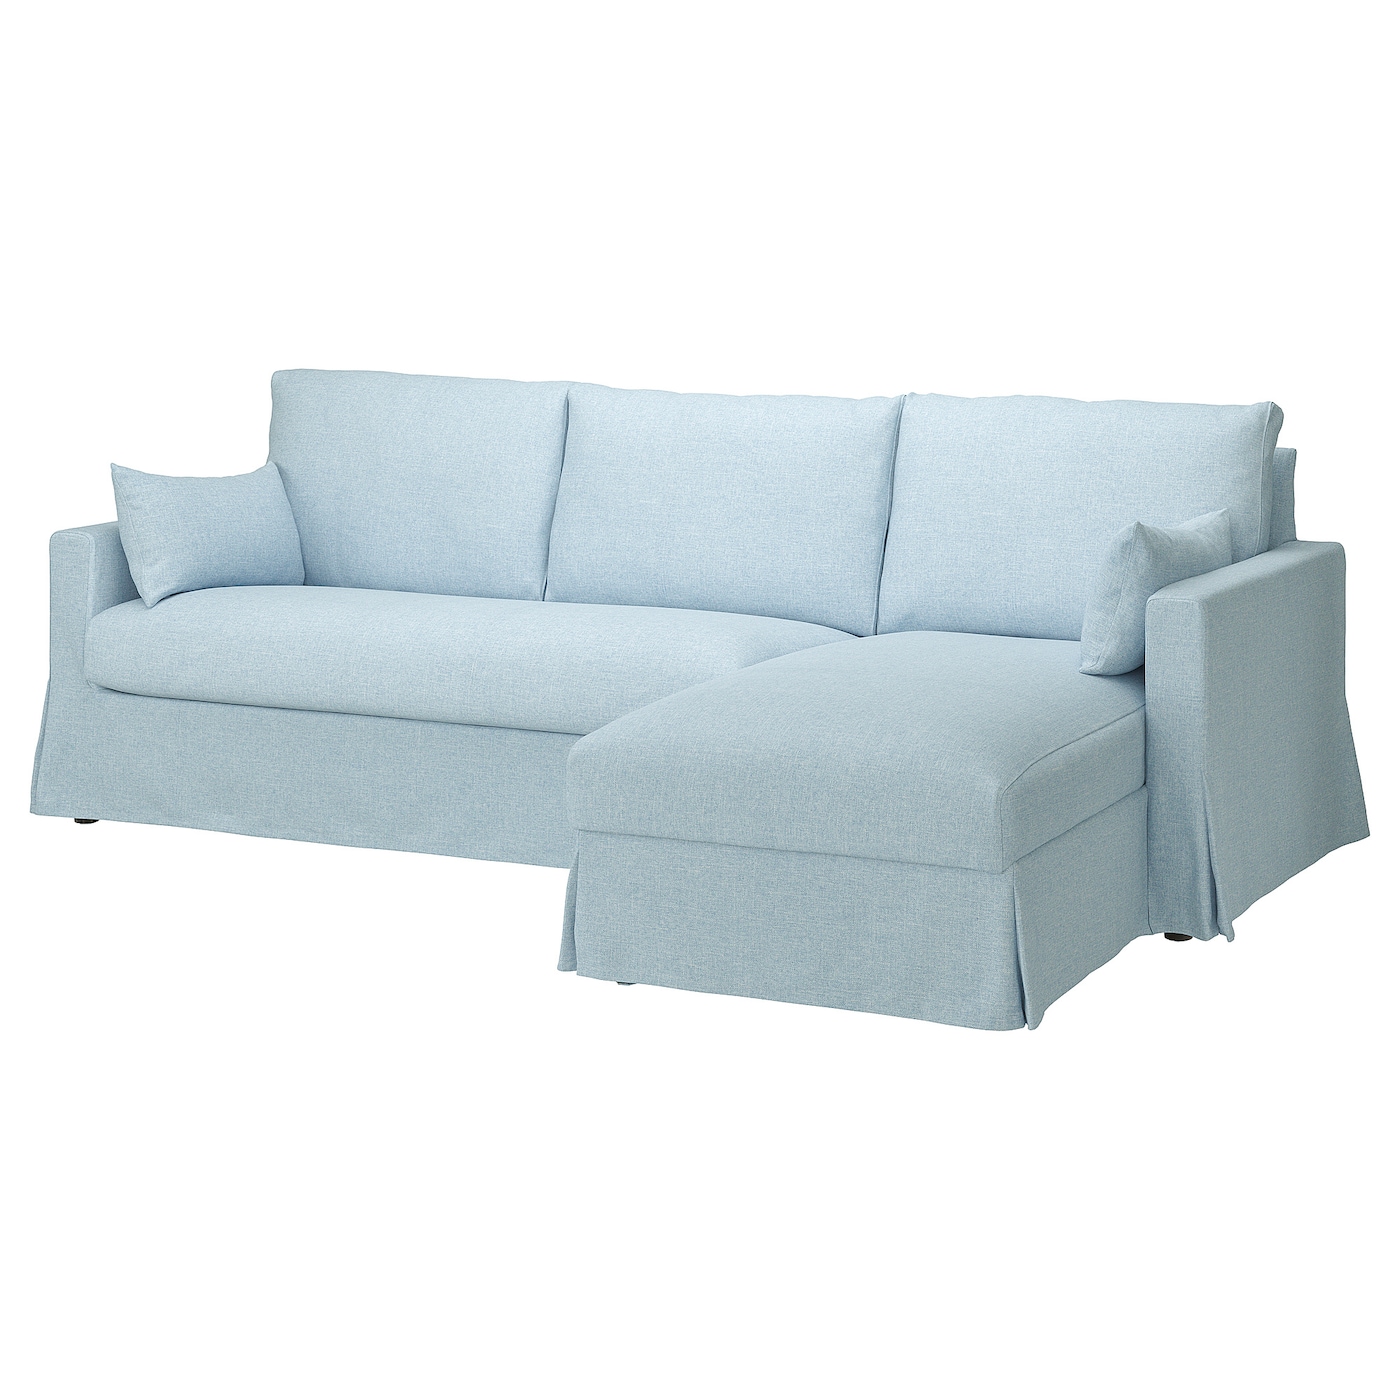 ХИЛТАРП 3-местный диван + диван, правый, Киланда бледно-синий HYLTARP IKEA